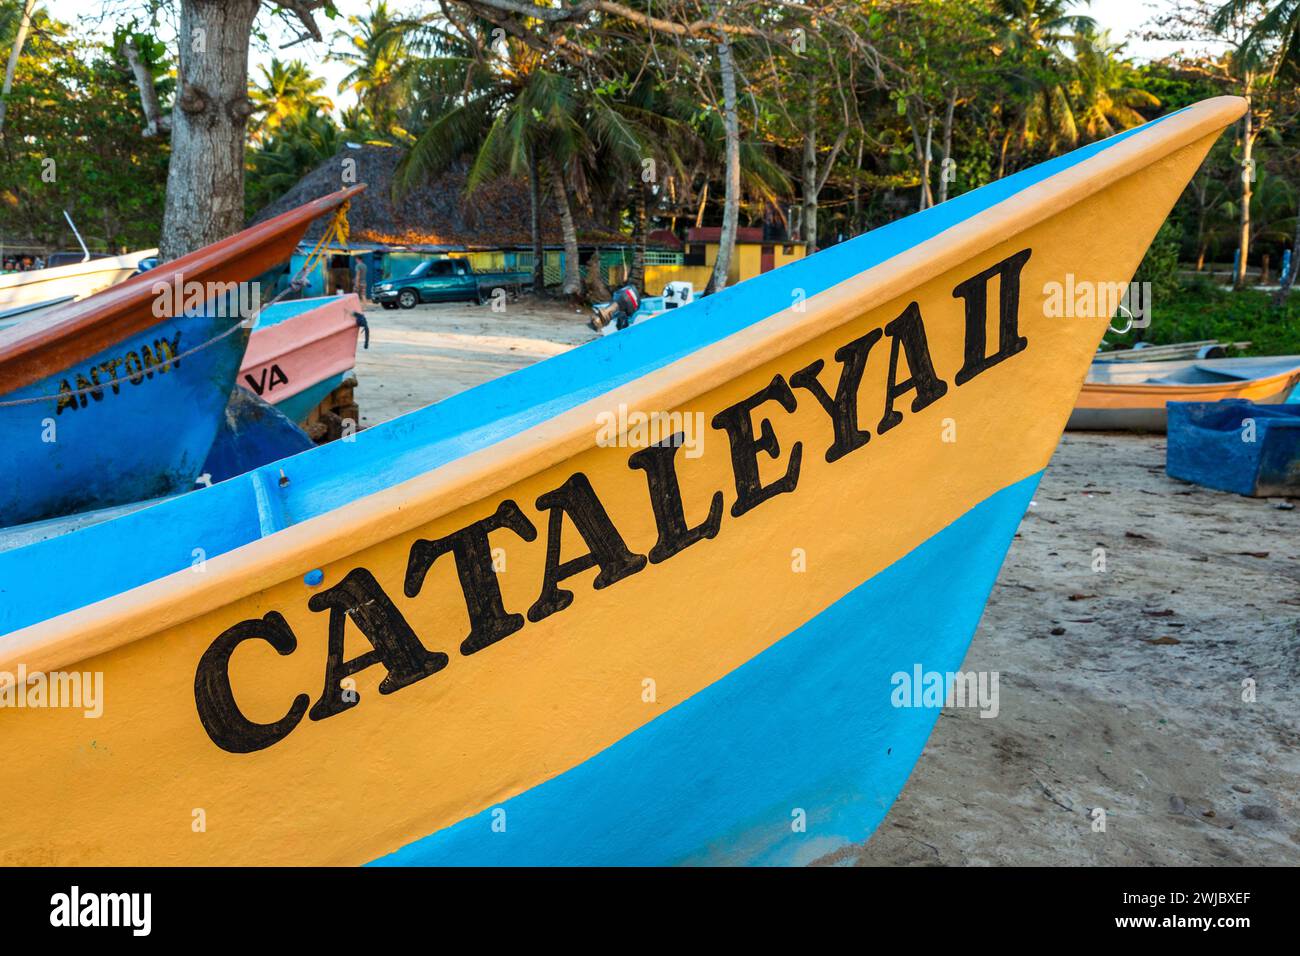 Bateaux de pêche sur la plage de Bahia de Las Galeras sur la péninsule de Samana, République Dominicaine. Banque D'Images